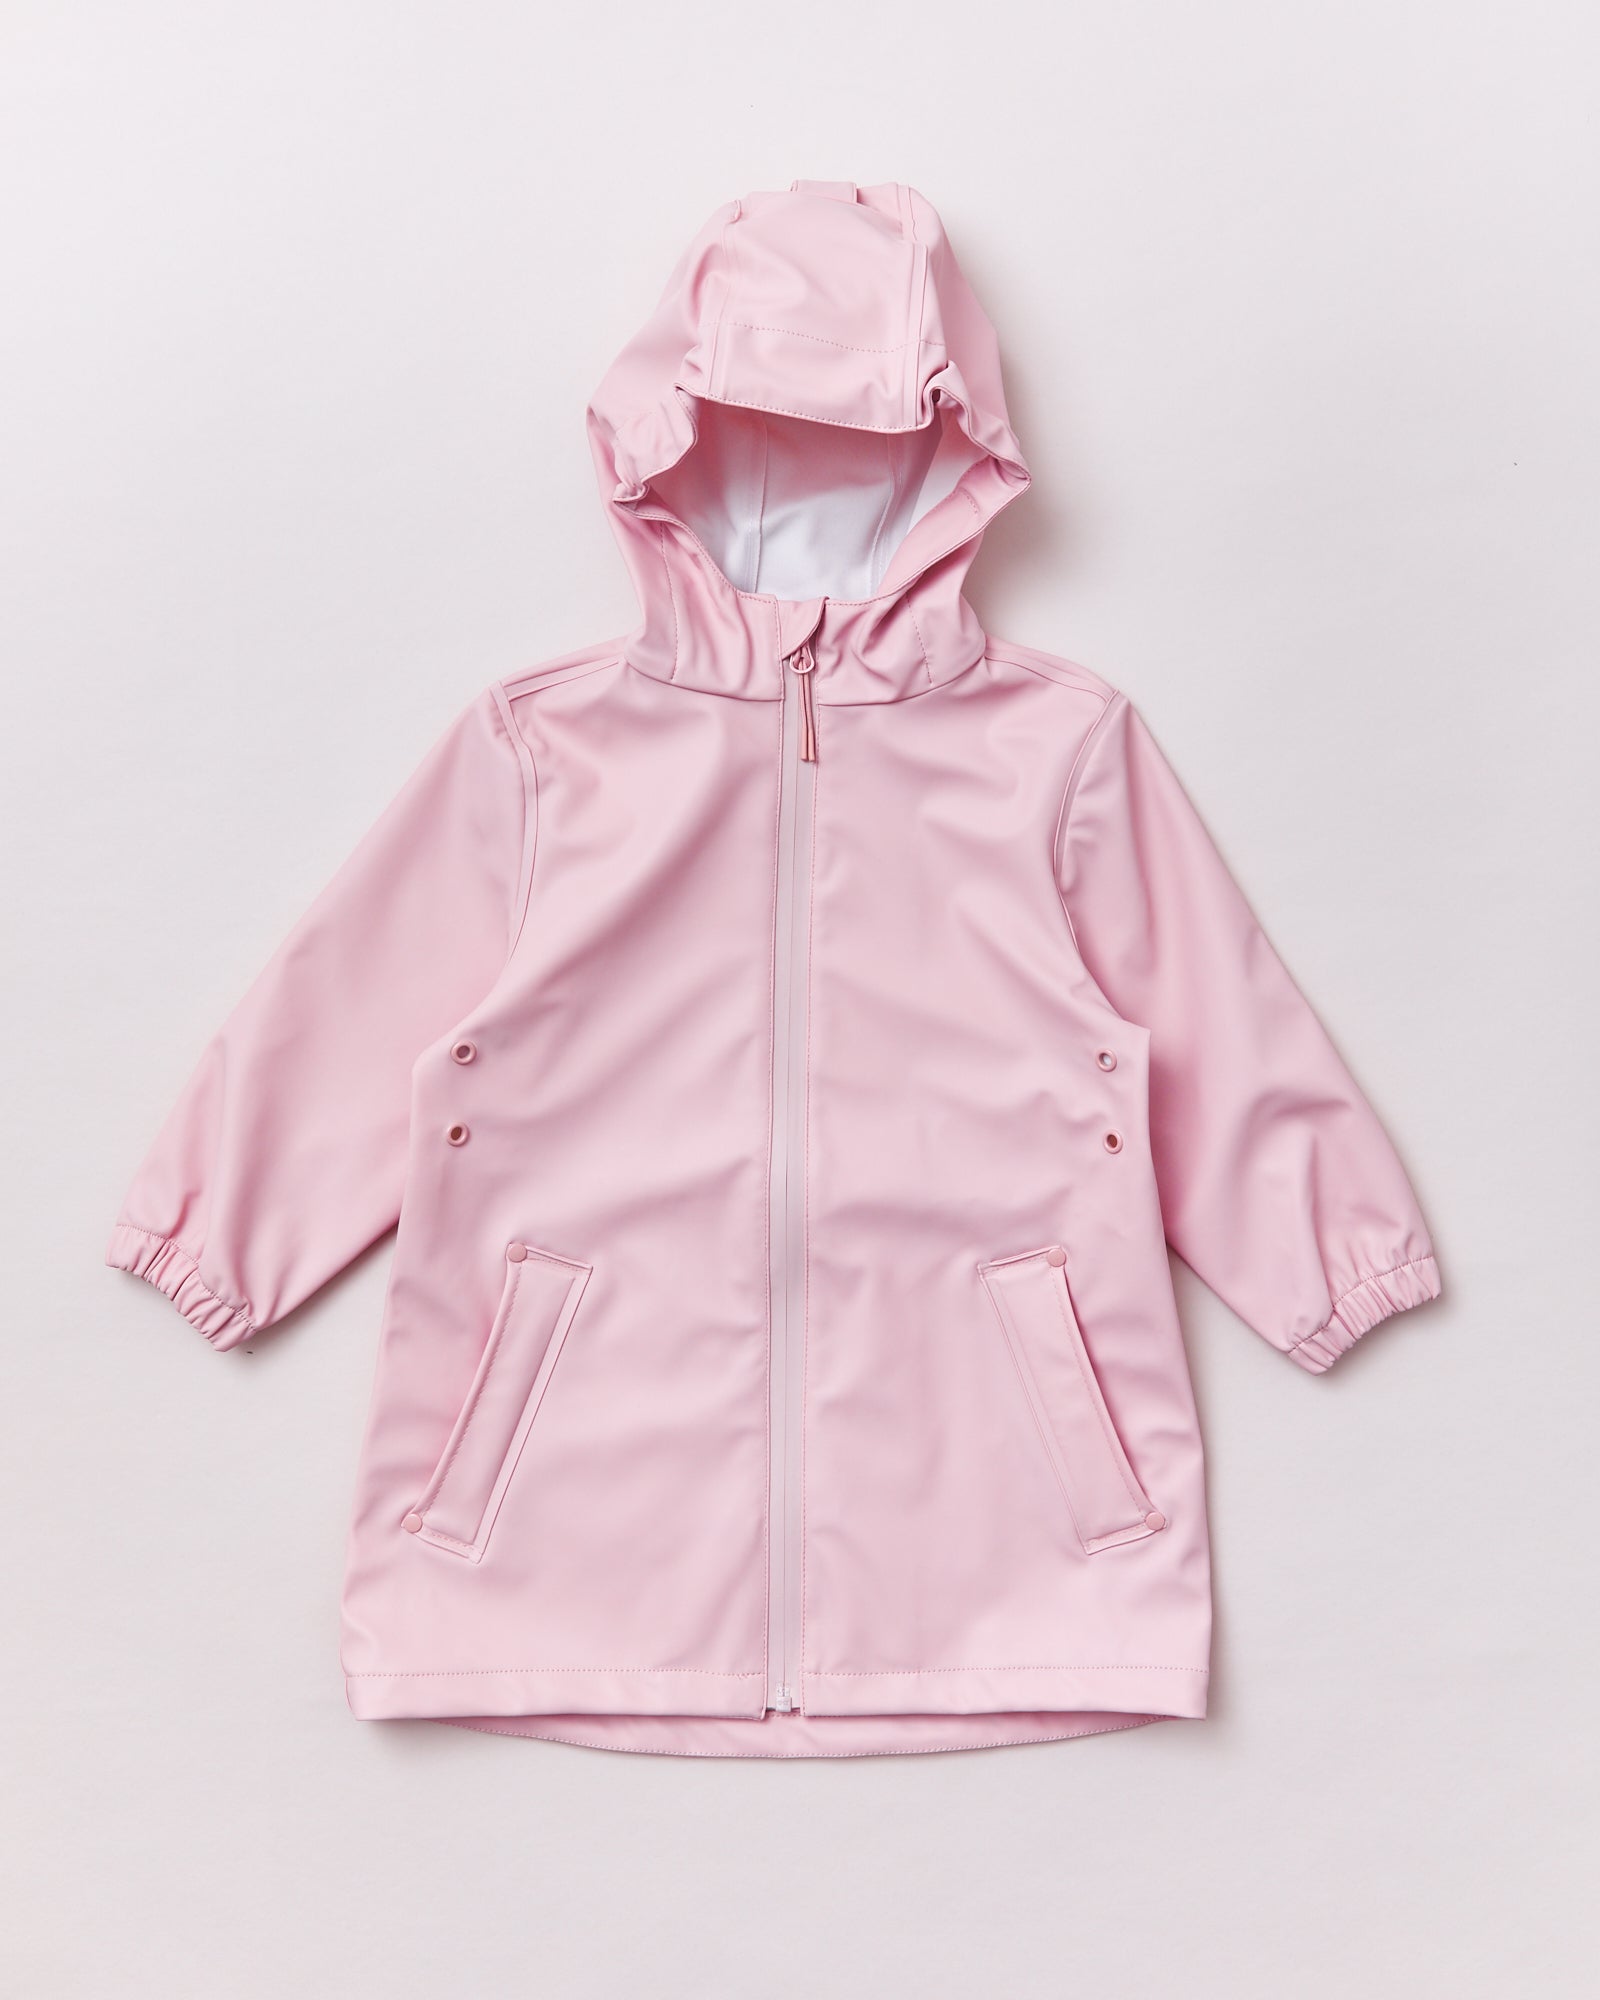 Urban Jacket - Blush Pink – Rainkoat